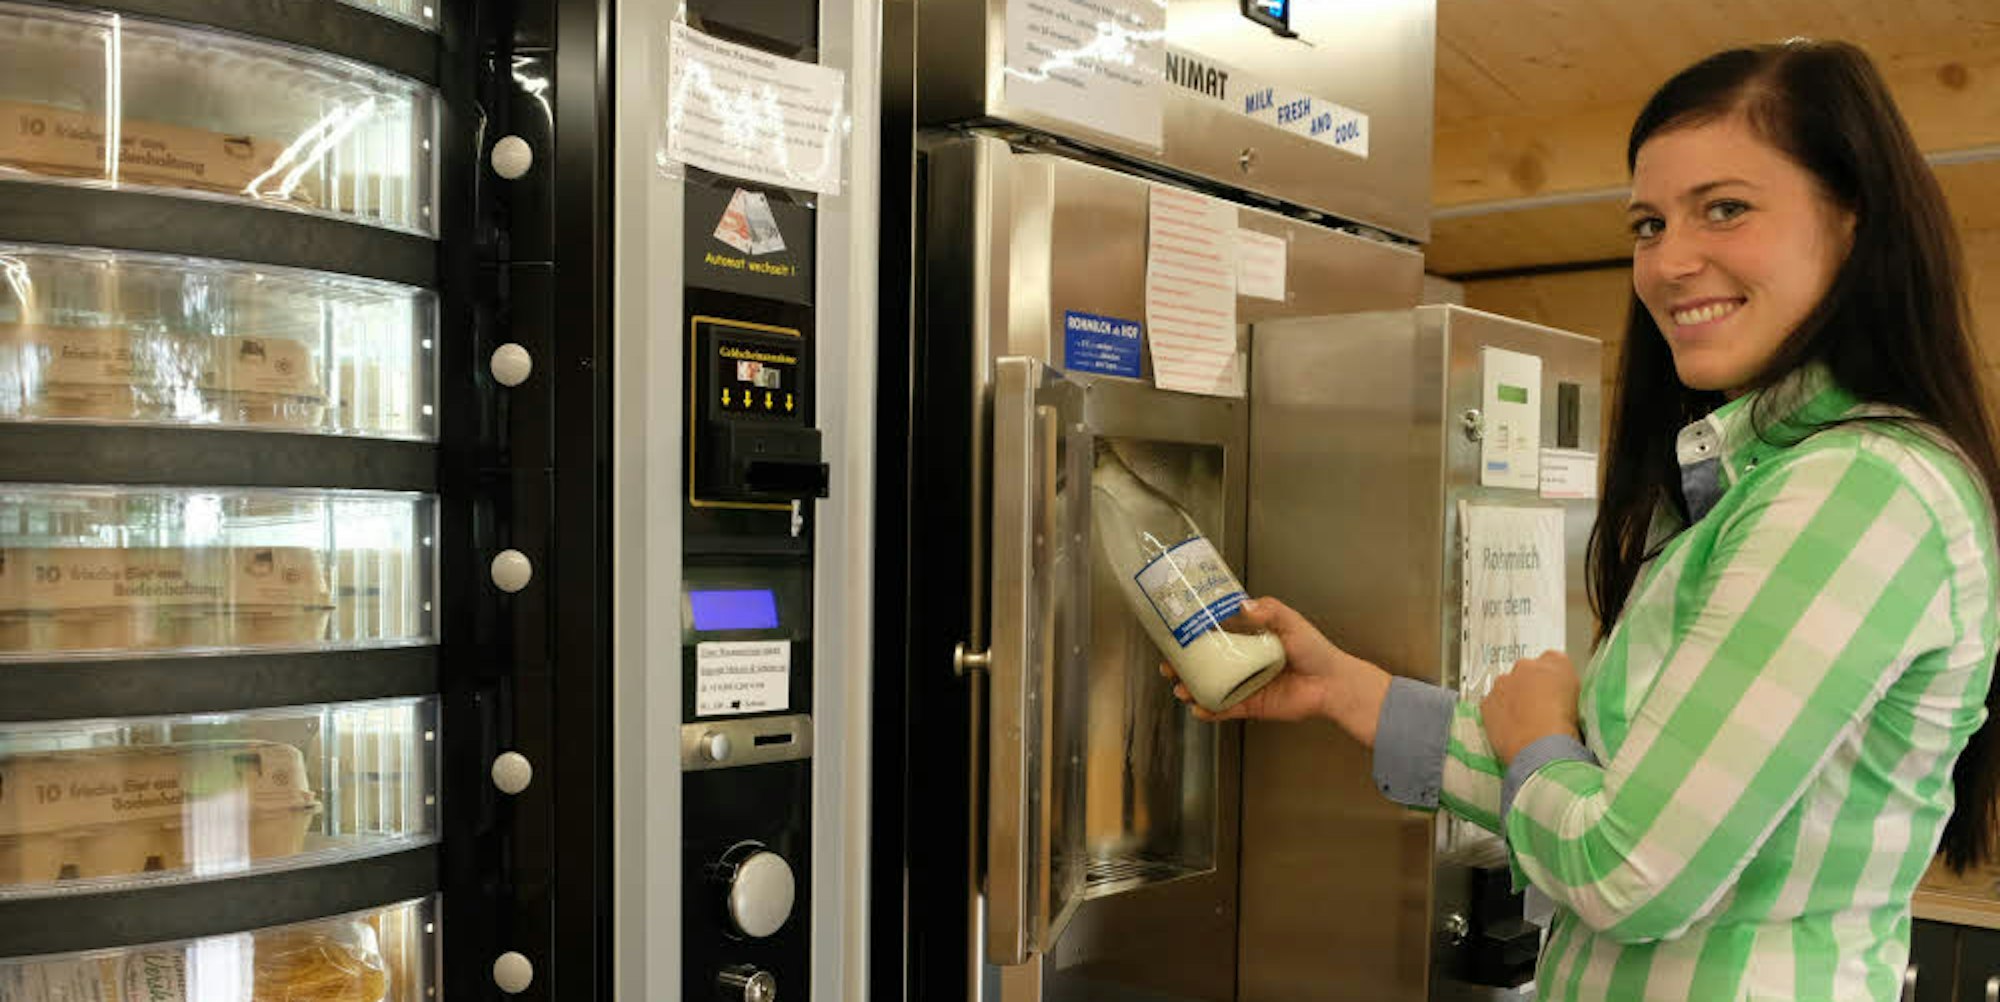 Wer als Kunde kein Gefäß hat, zieht sich eine Flasche am Automaten links, ehe er am Frischmilchautomaten für einen Euro einen Liter Milch zapft. Cornelia Flatten zeigt, wie es geht.